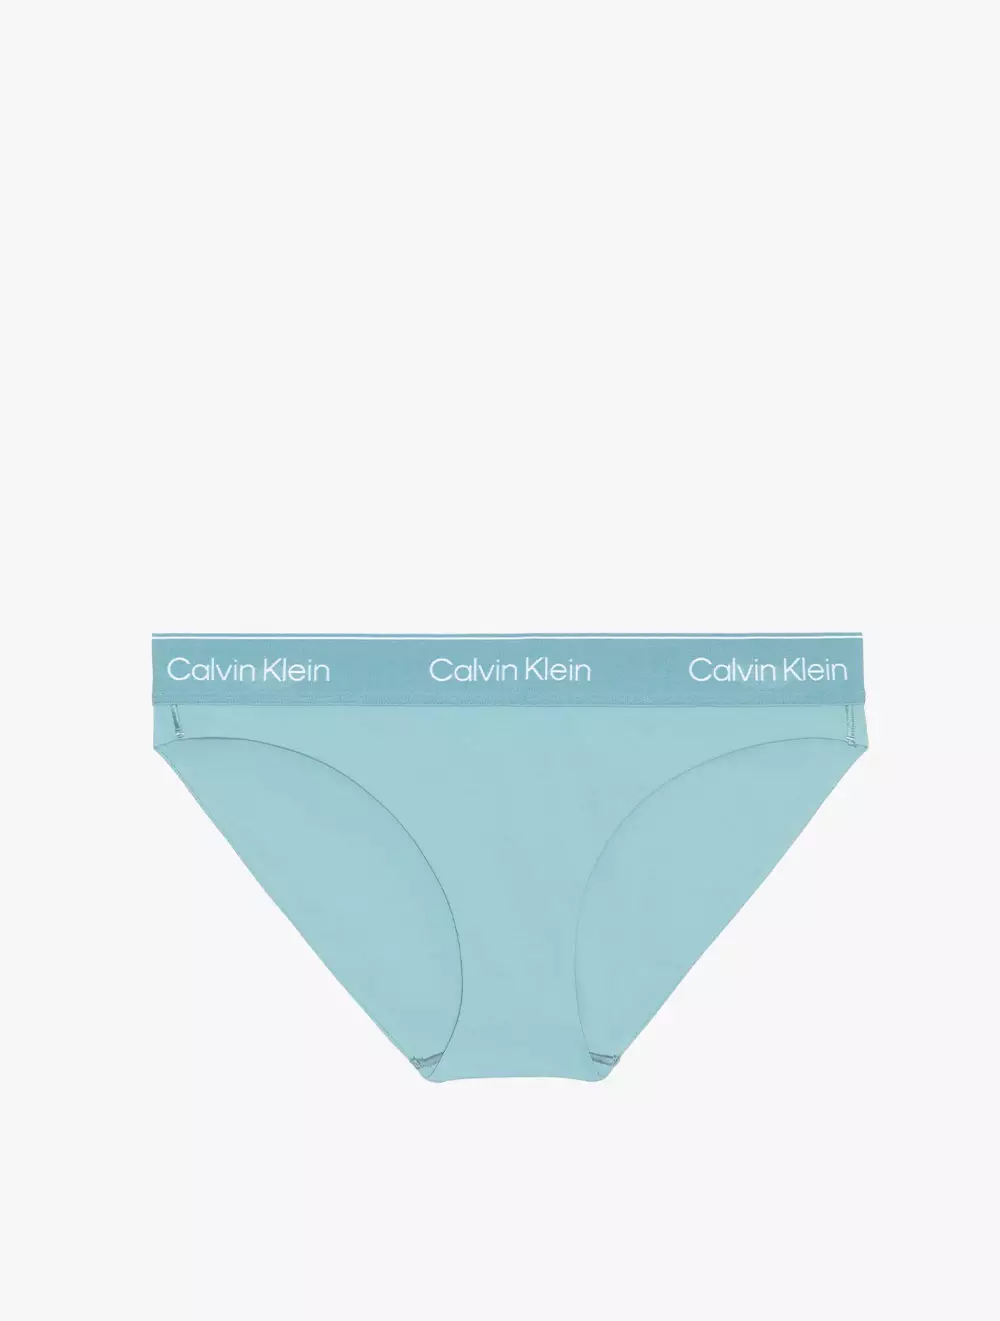 Jual Calvin Klein CALVIN KLEIN UNDERWEAR - MODERN PERFORMANCE